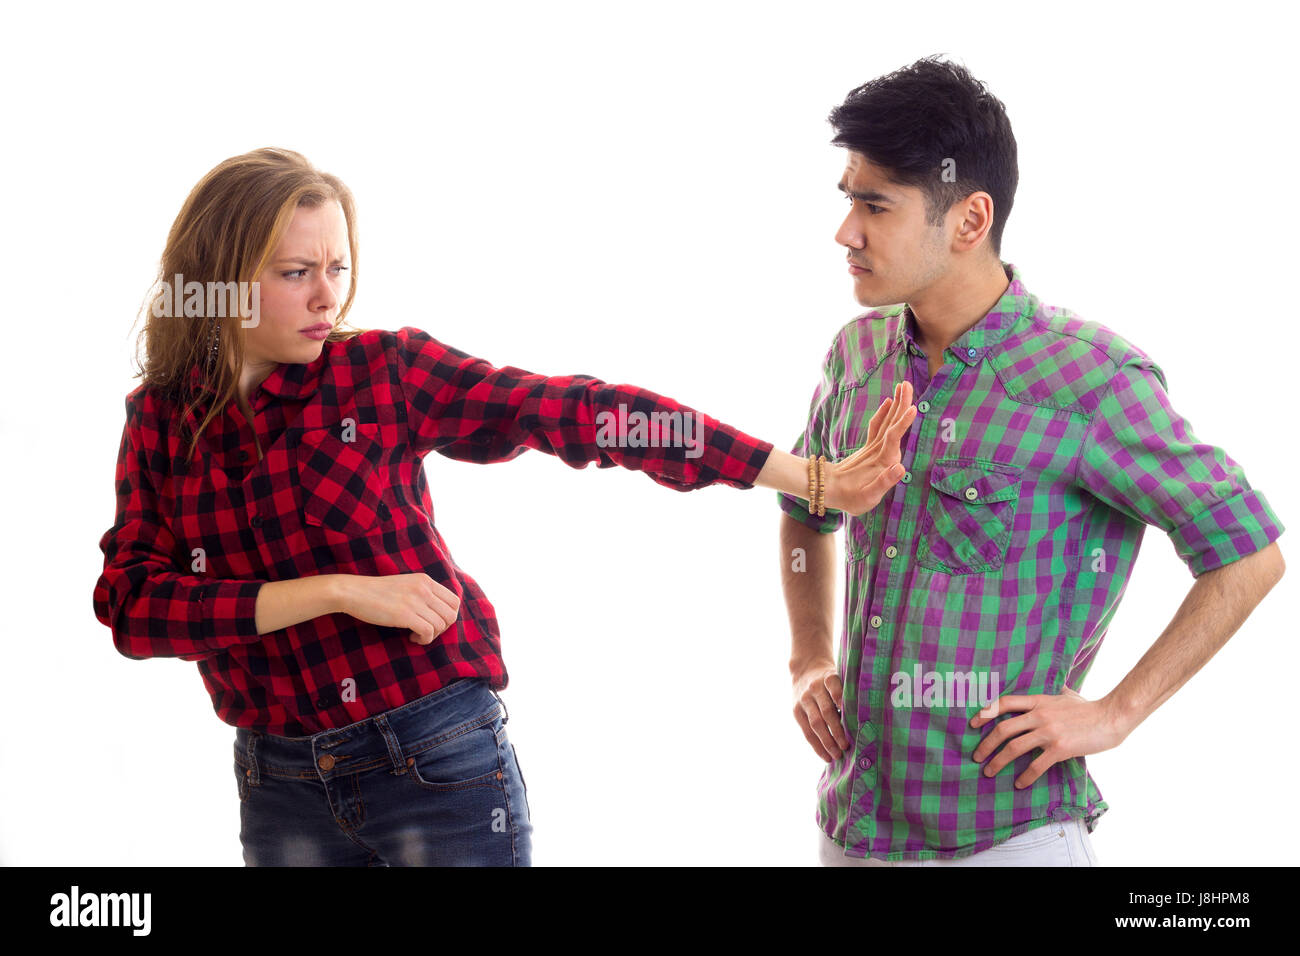 Jeune couple en soutenant des chemises à carreaux Banque D'Images